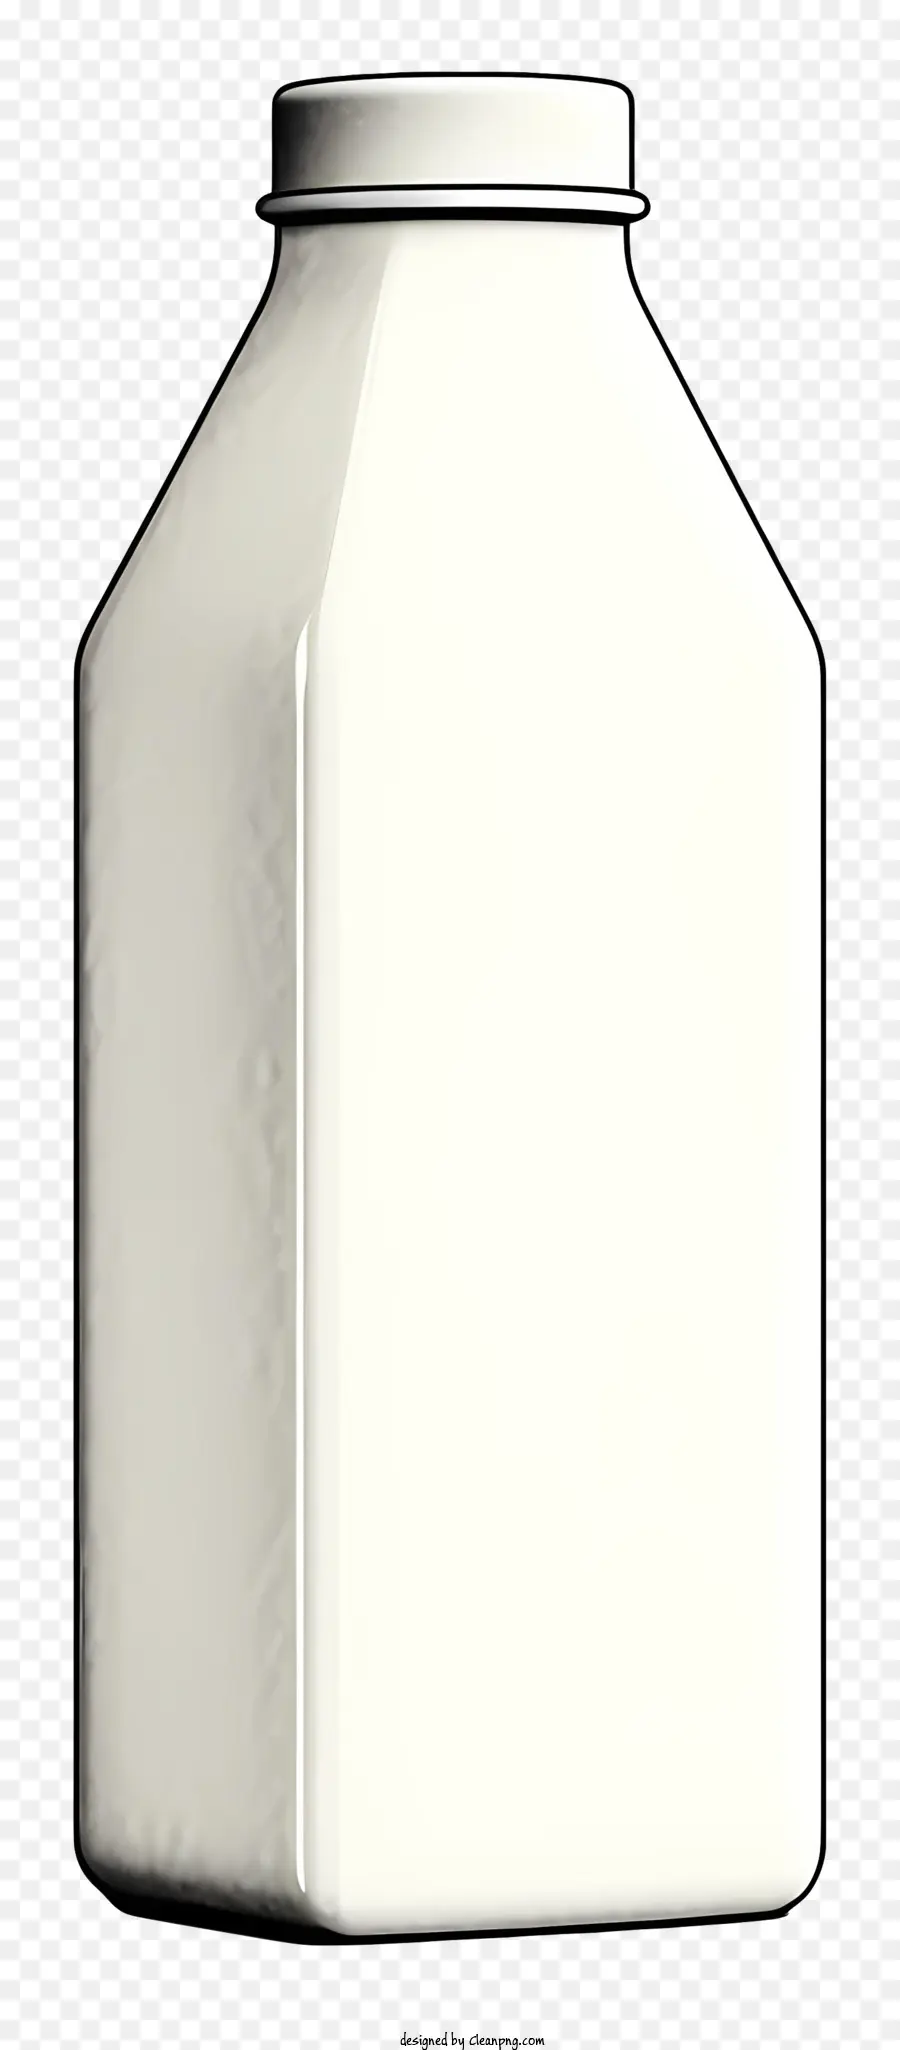 Kunststoff Flasche - Weiße Plastikflasche mit runden Körper und gebogenem Hals, sitzt auf schwarzem Hintergrund, mit großem runden Etikett, teilweise mit weißem Aufkleber mit schwarzem Text bedeckt